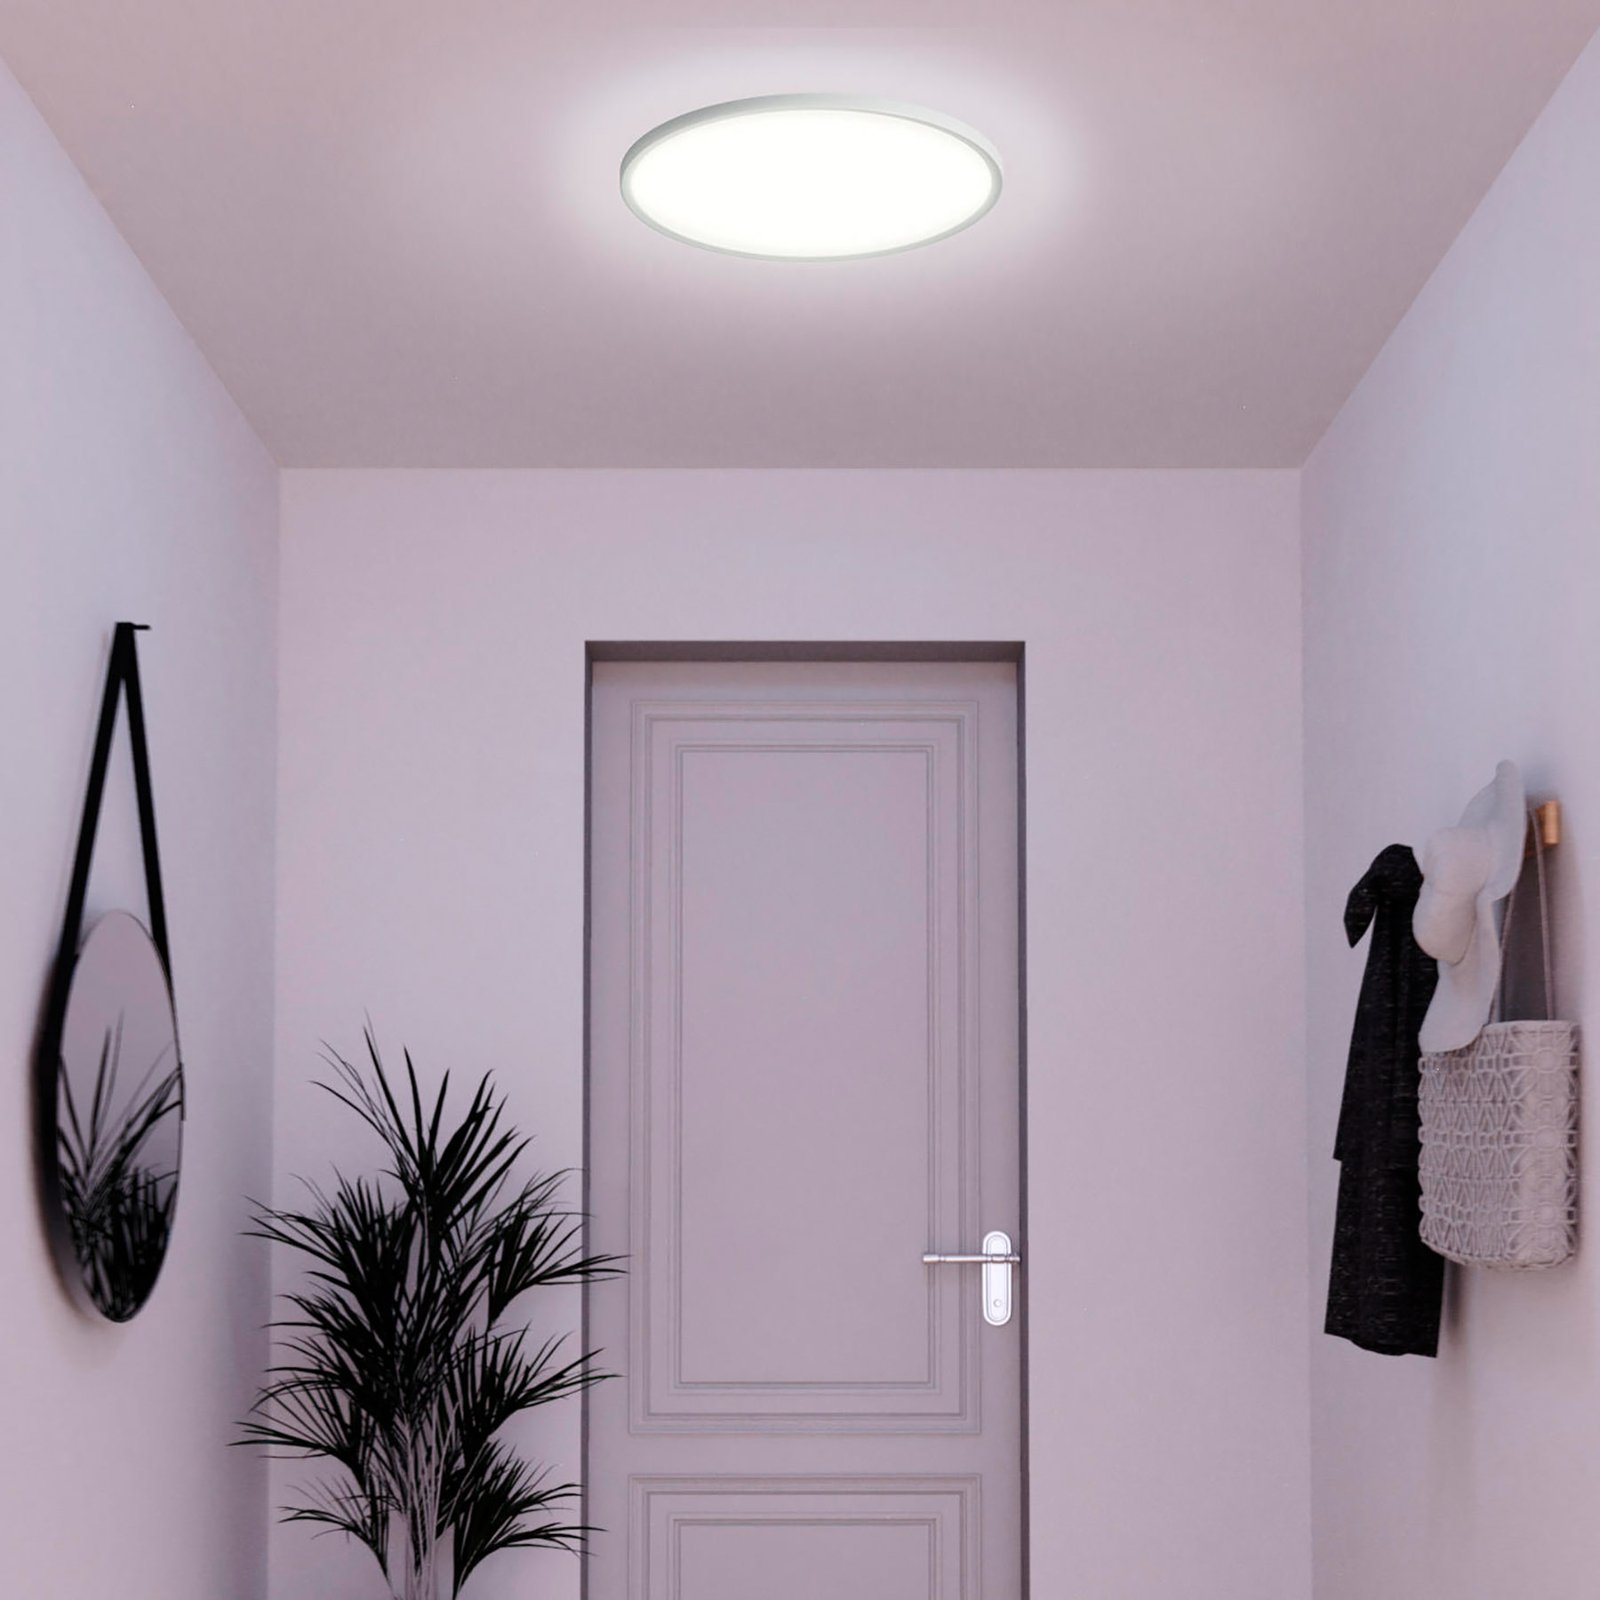 Müller Licht tint Smart LED ceiling light Amela, Ø 50 cm